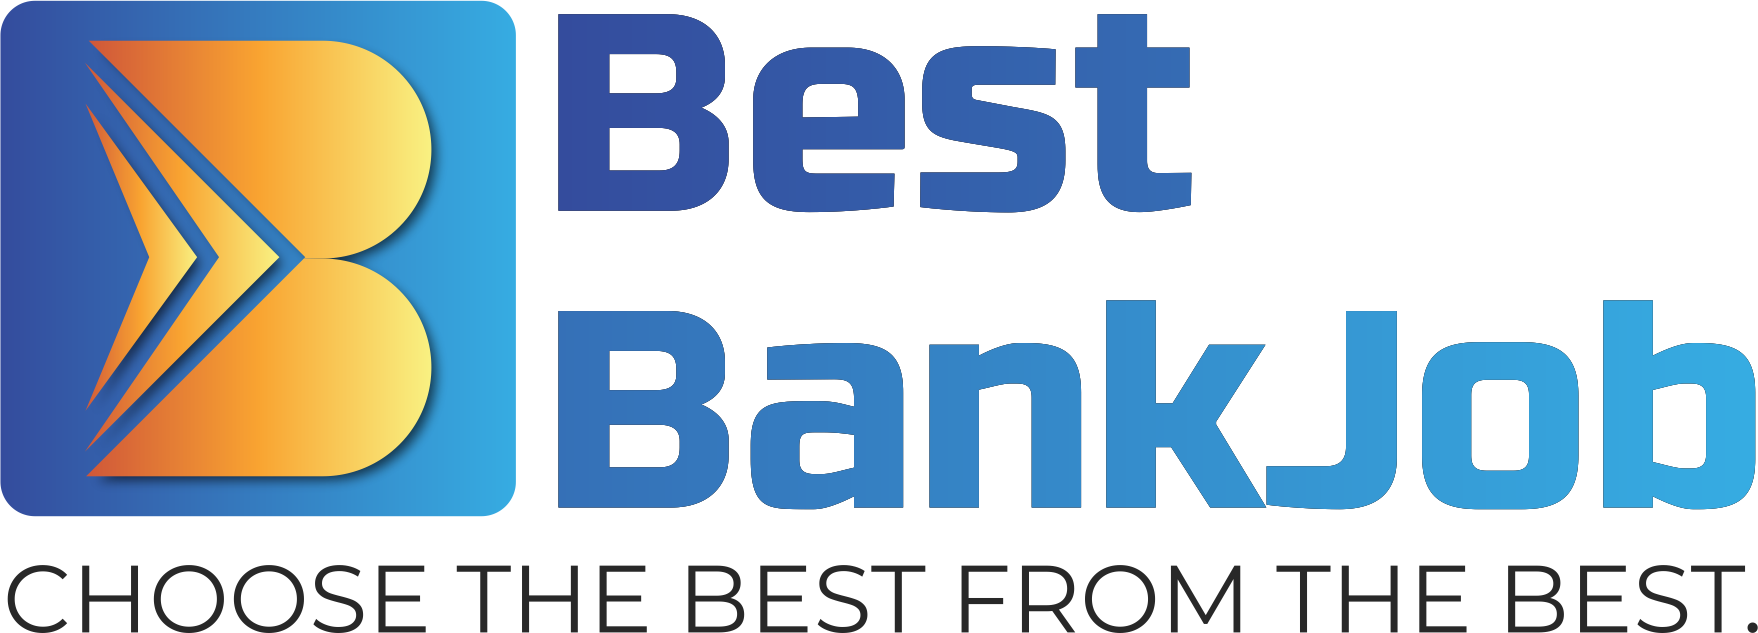 BestBankjob Logo